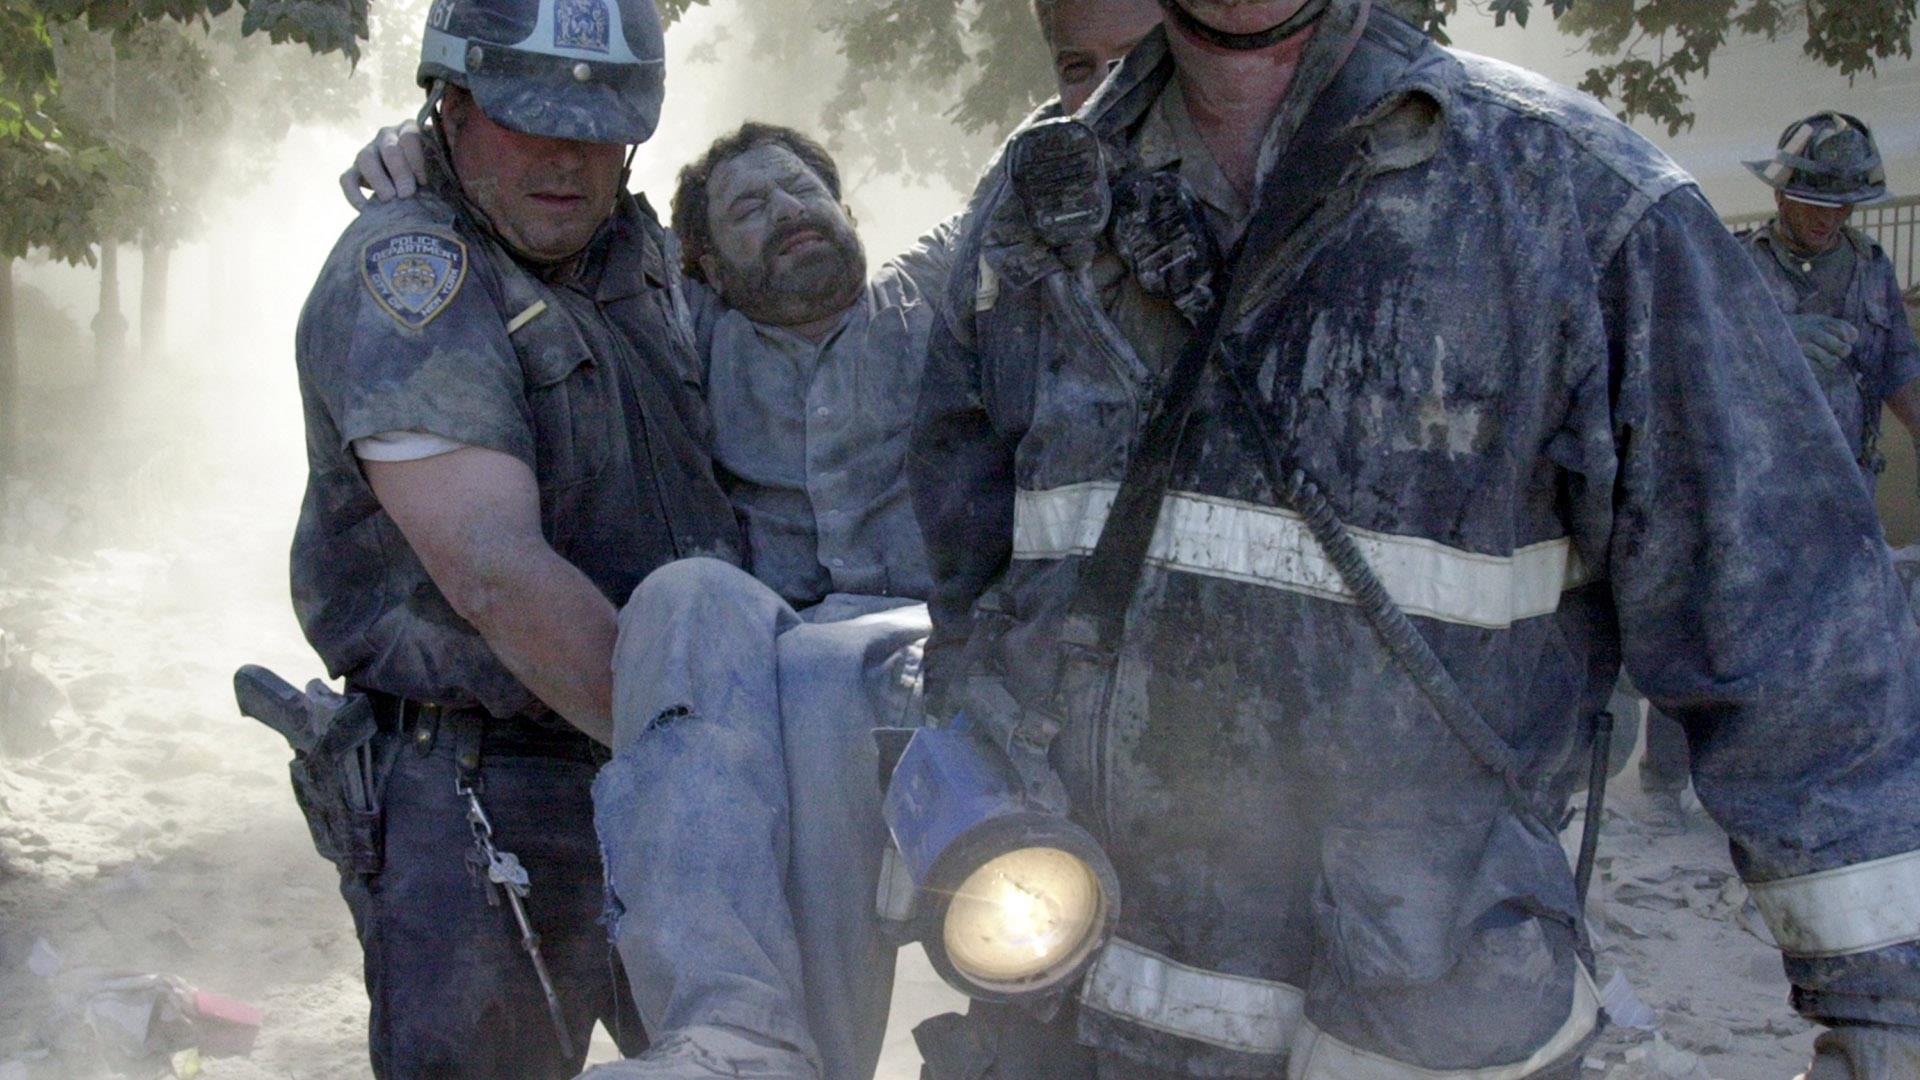 7 августа 2001 год. 9.11.2001 Теракт сержант Маклафлин. Теракт в США 2001 башни Близнецы. Башни Близнецы 11 сентября жертвы.